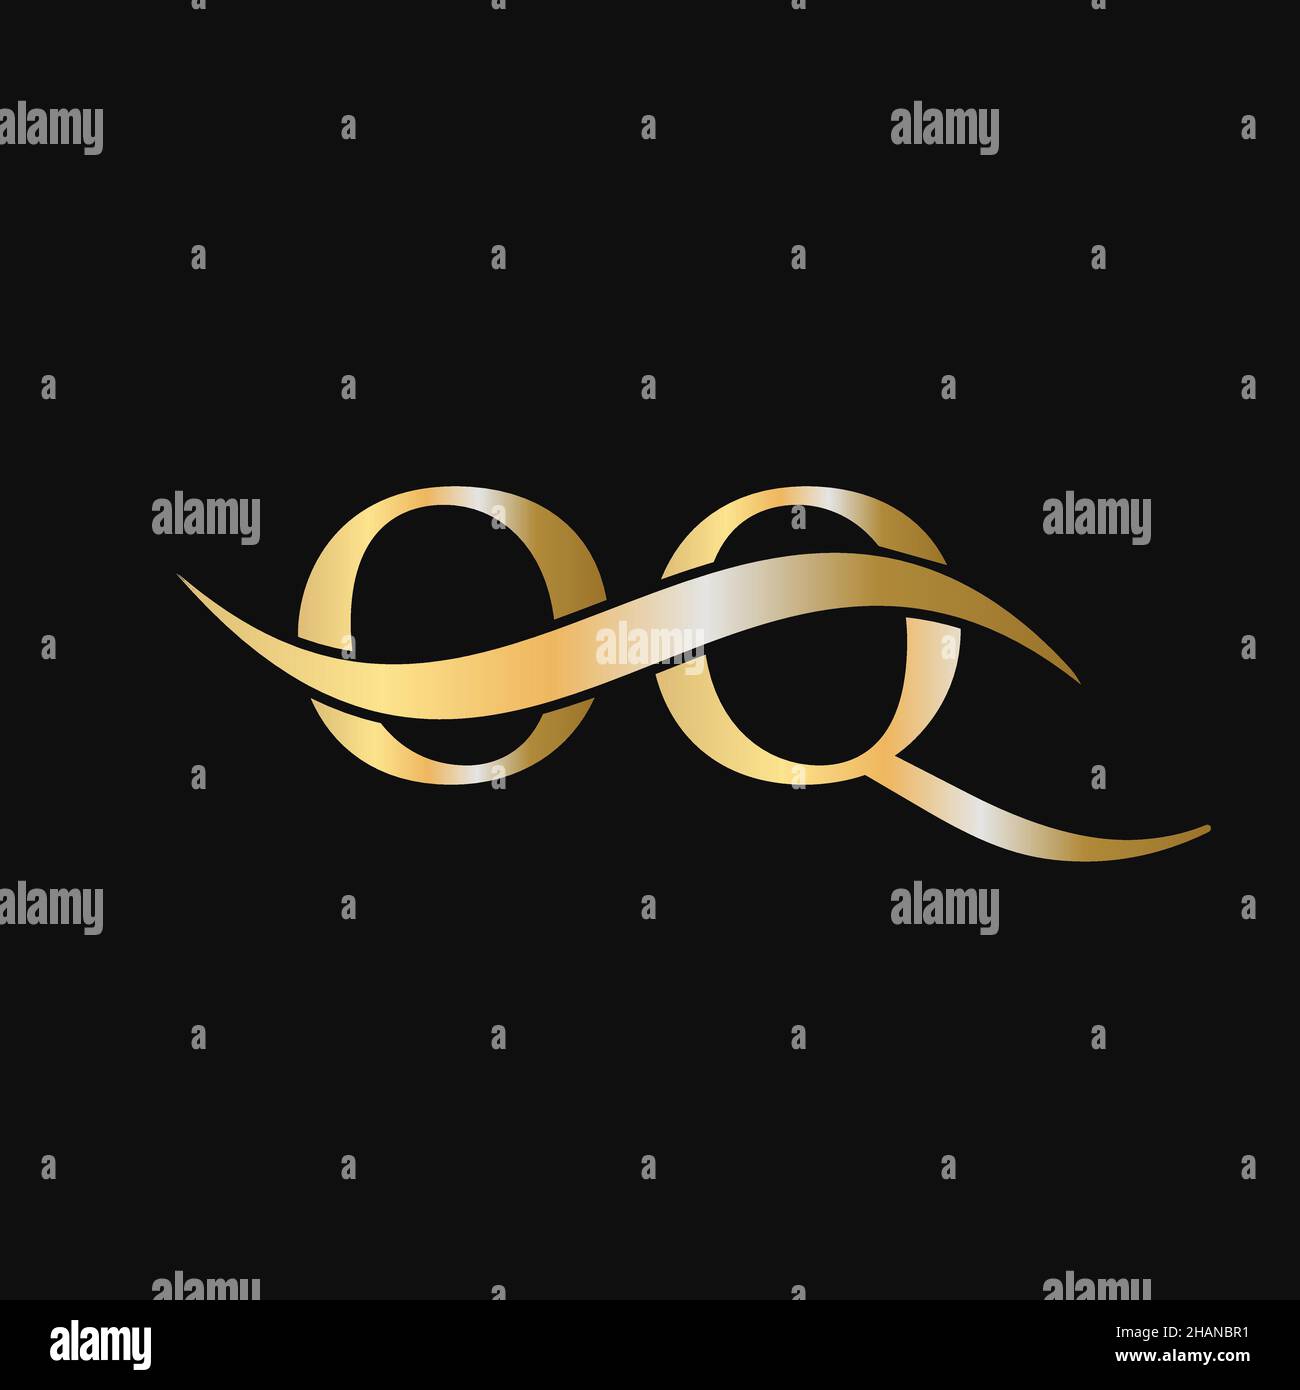 Modèle de logo Letter OQ.OQ, O Q lettre logo Modern, Flat, minimaliste, Business, Company Sign Illustration de Vecteur